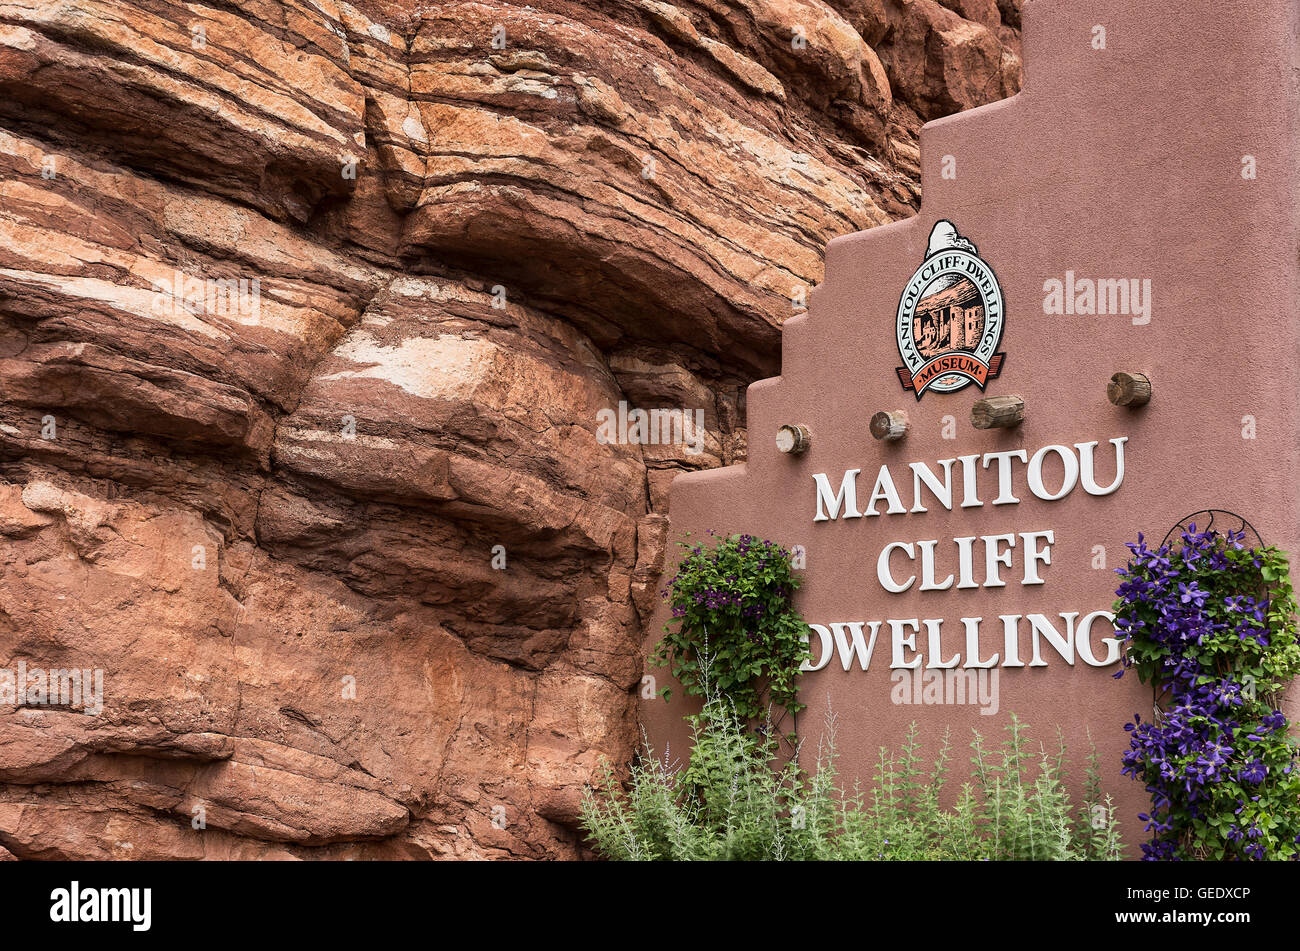 Manitou Cliff dwellings de l'Anasazi, Native American Indian tribe. Ces logements étaient sculptés dans du grès rouge doux Banque D'Images